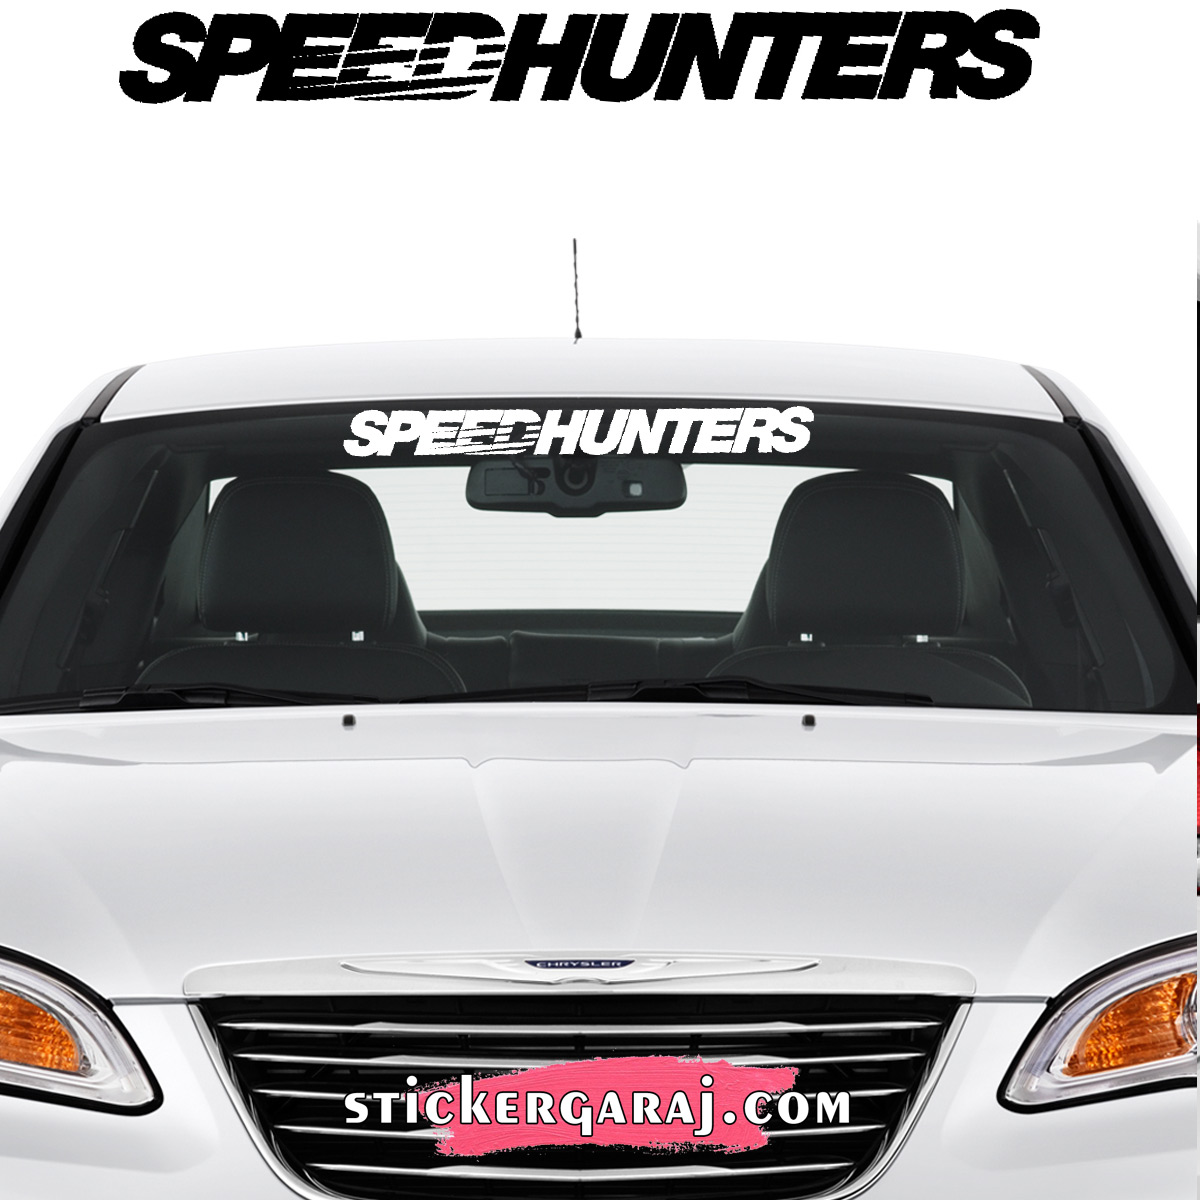 Mercedes oto sticker 1 - Mercedes cam sticker - speedhunters